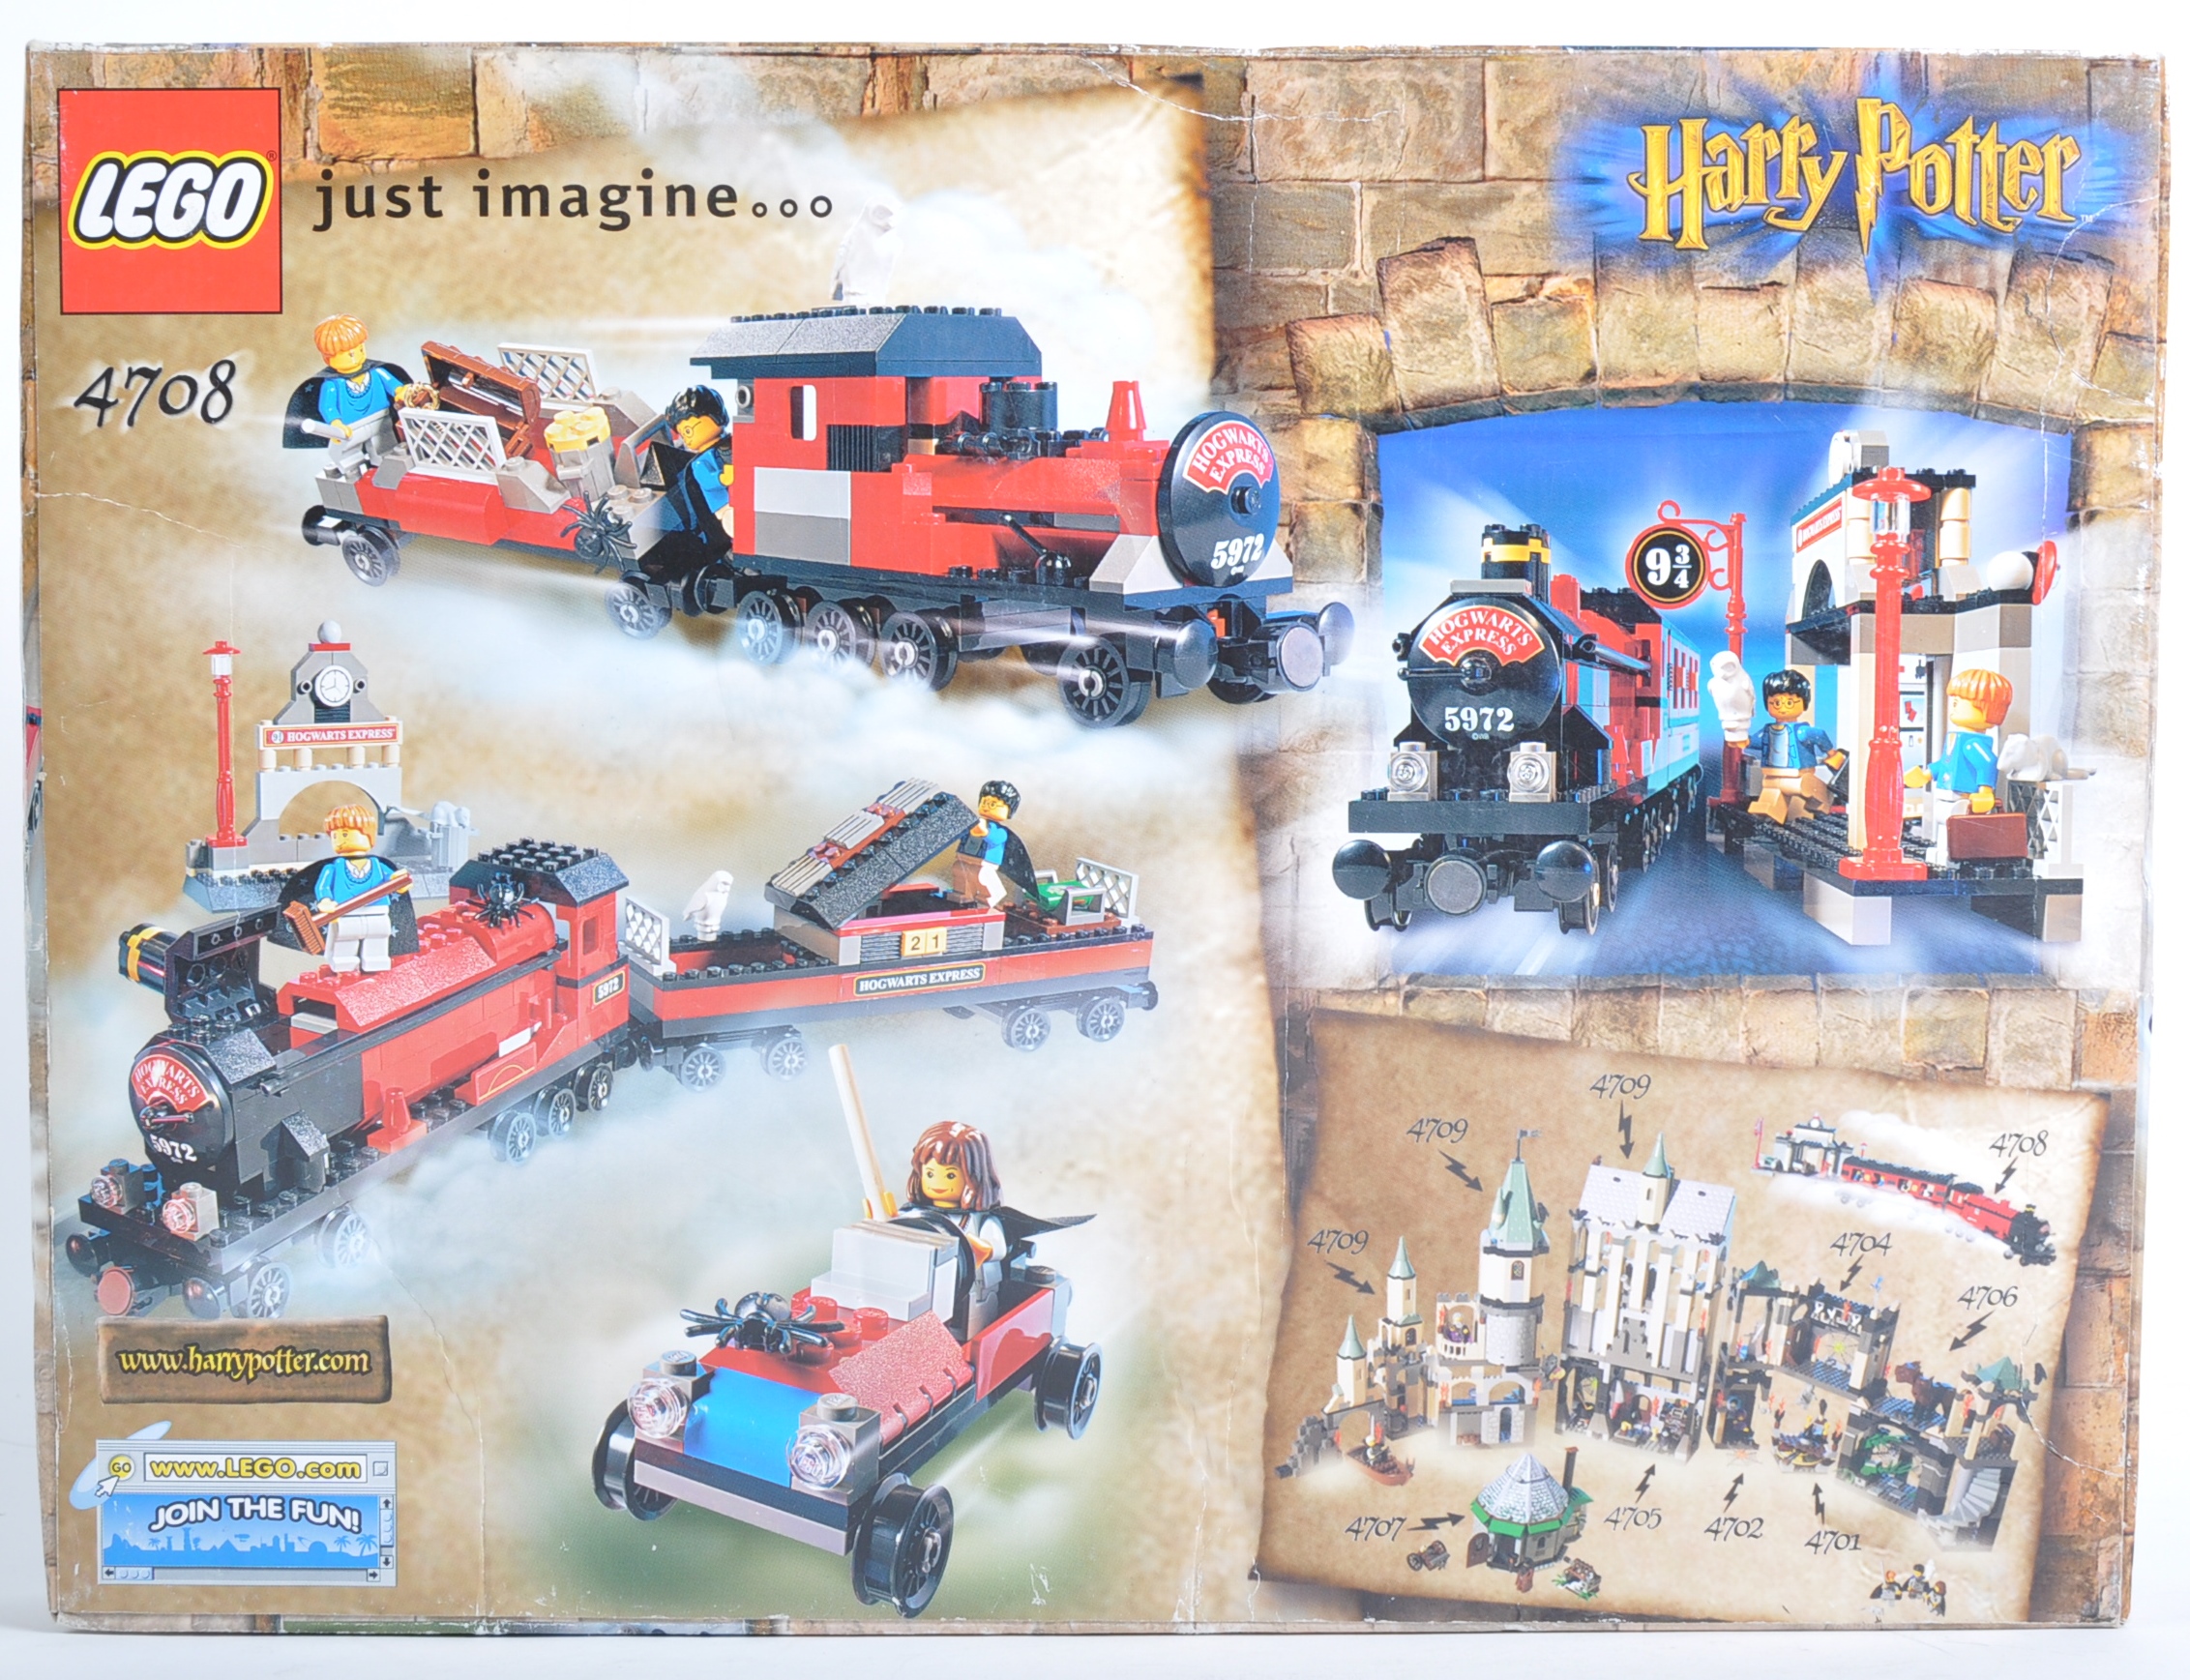 LEGO SET - LEGO HARRY POTTER - 4708 - HOGWARTS EXPRESS - Image 2 of 4